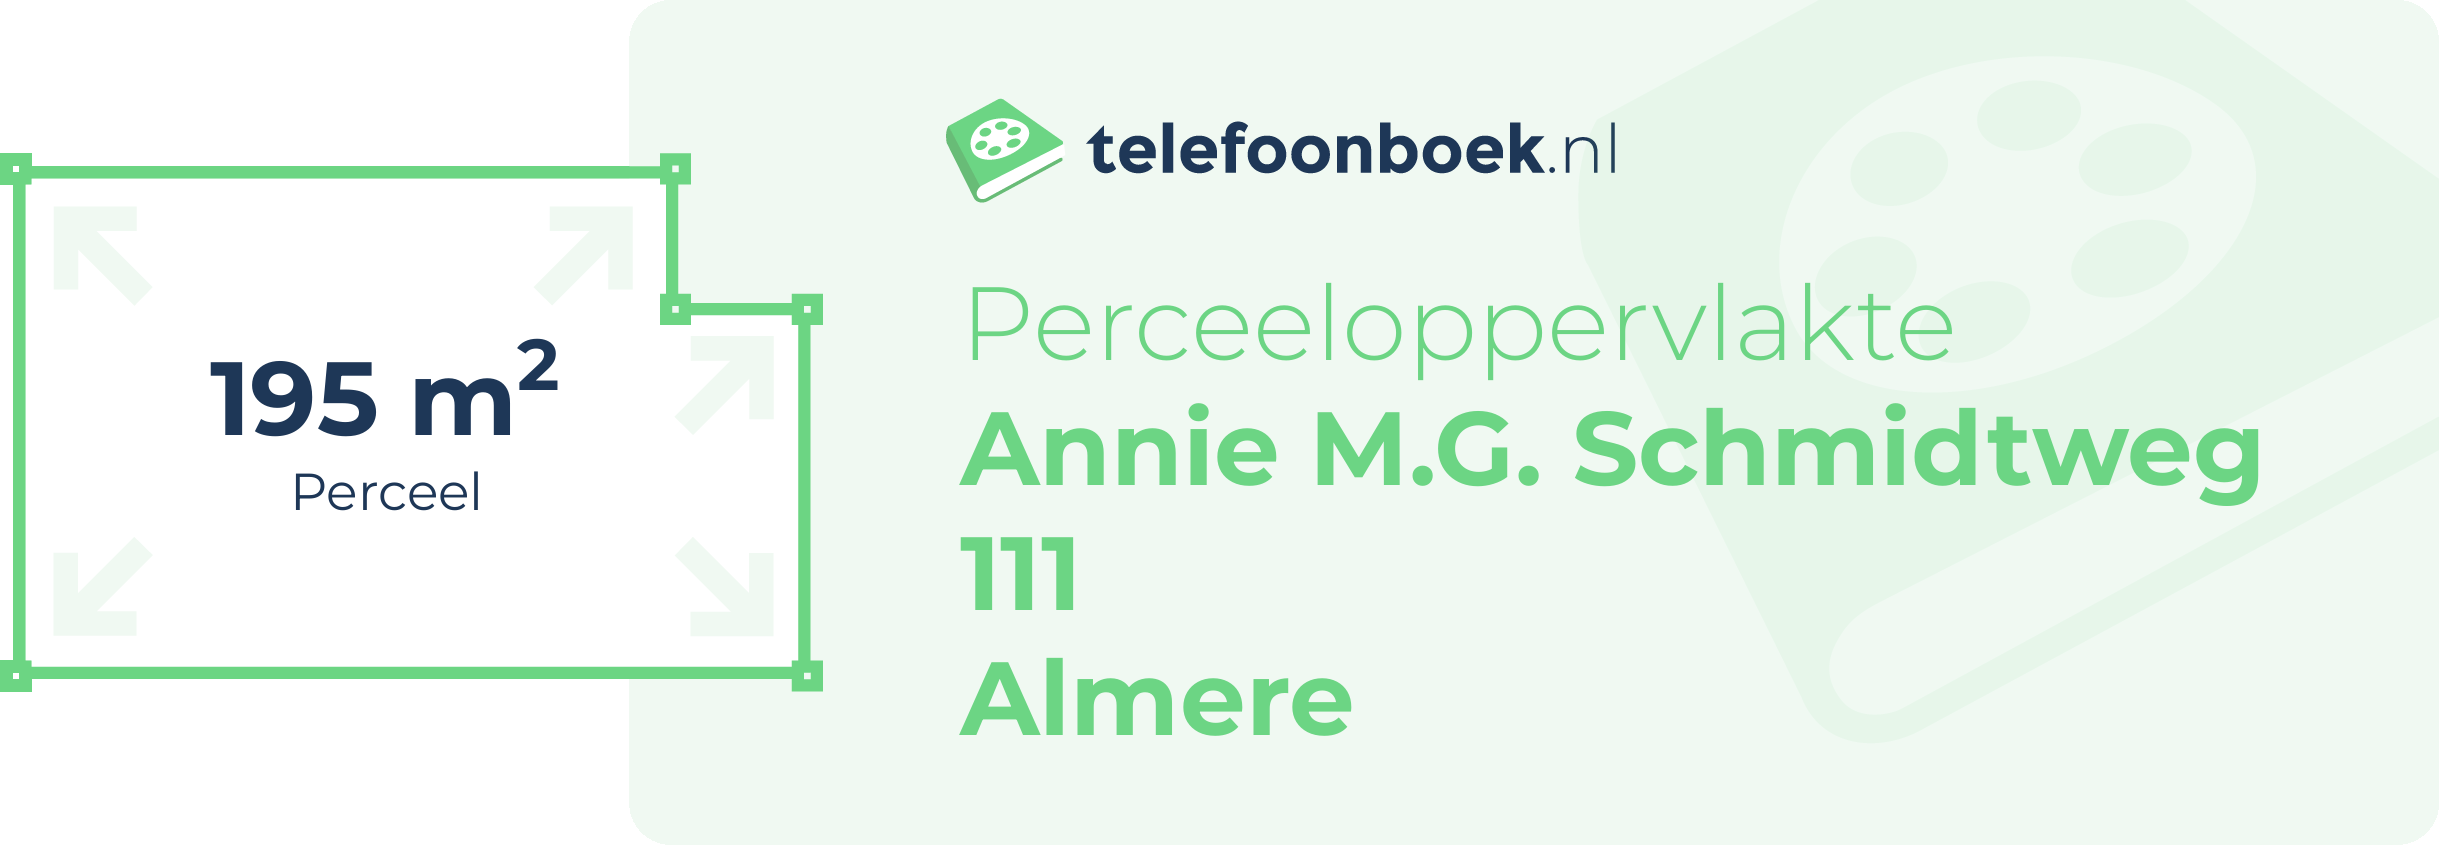 Perceeloppervlakte Annie M.G. Schmidtweg 111 Almere